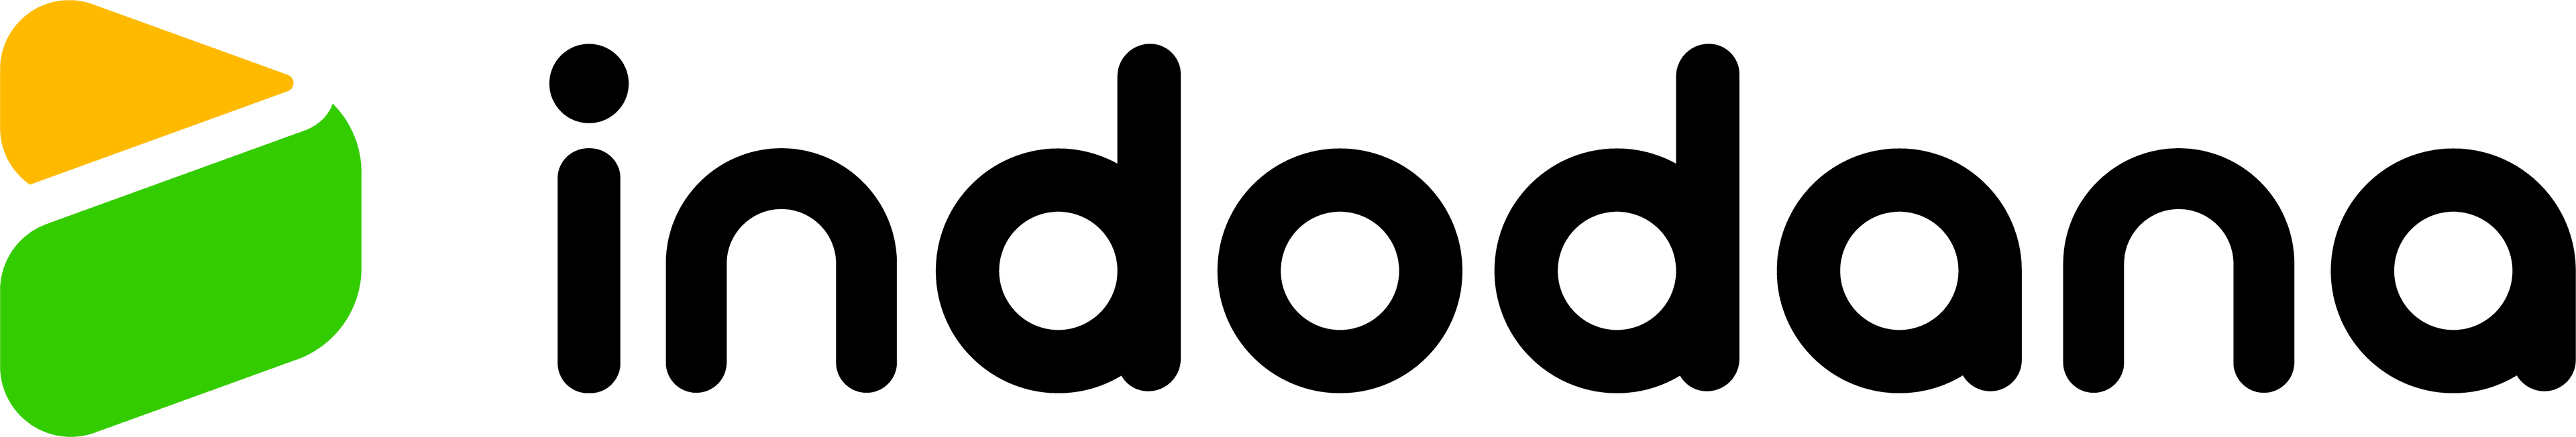 logo-dana